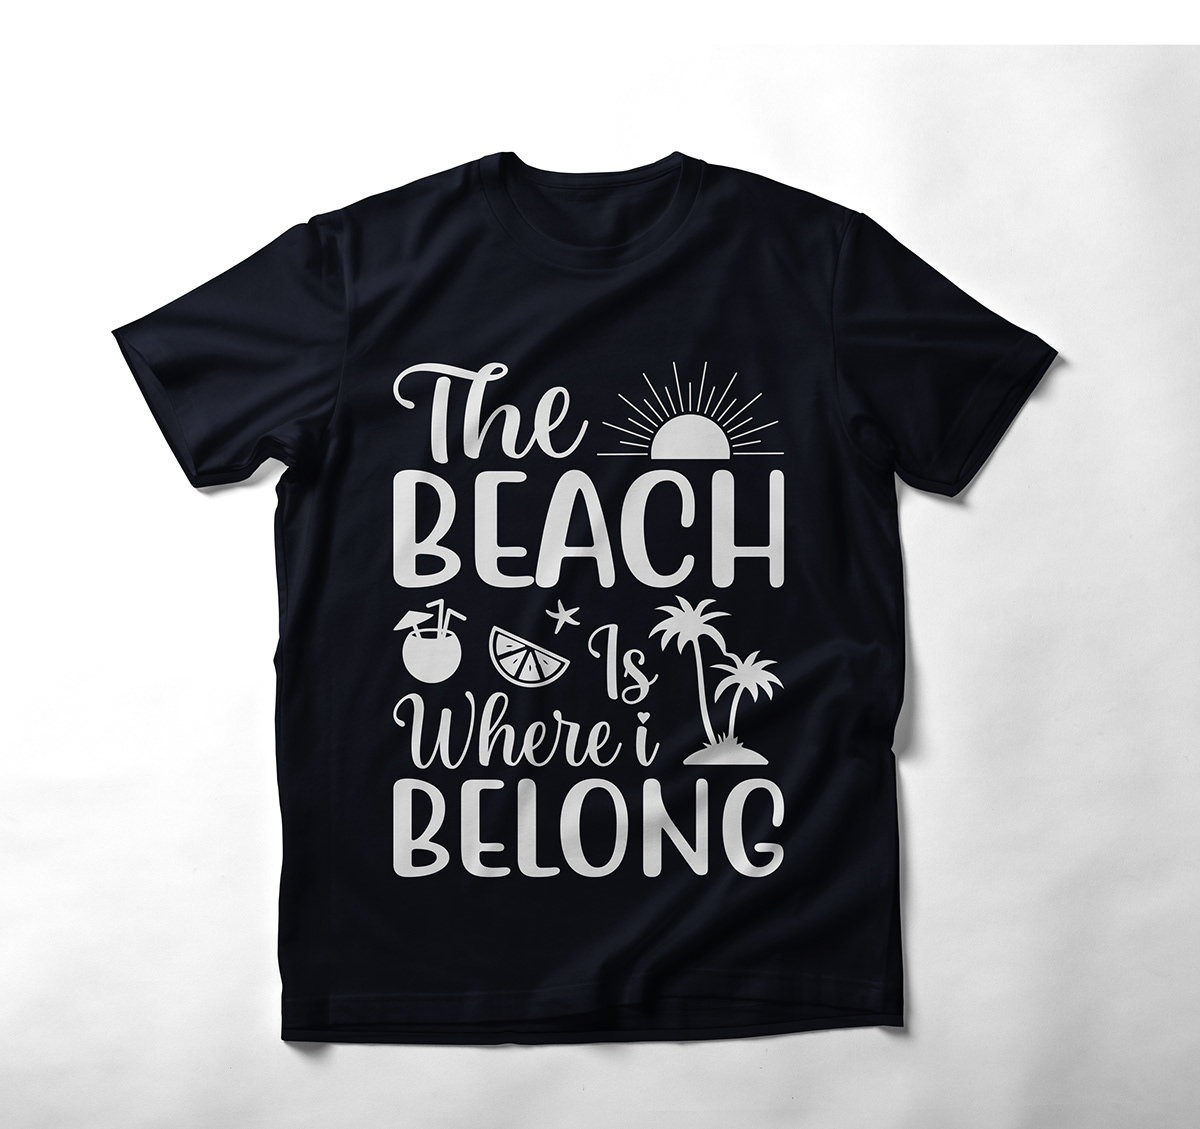 The beach is where i belong t shirt design